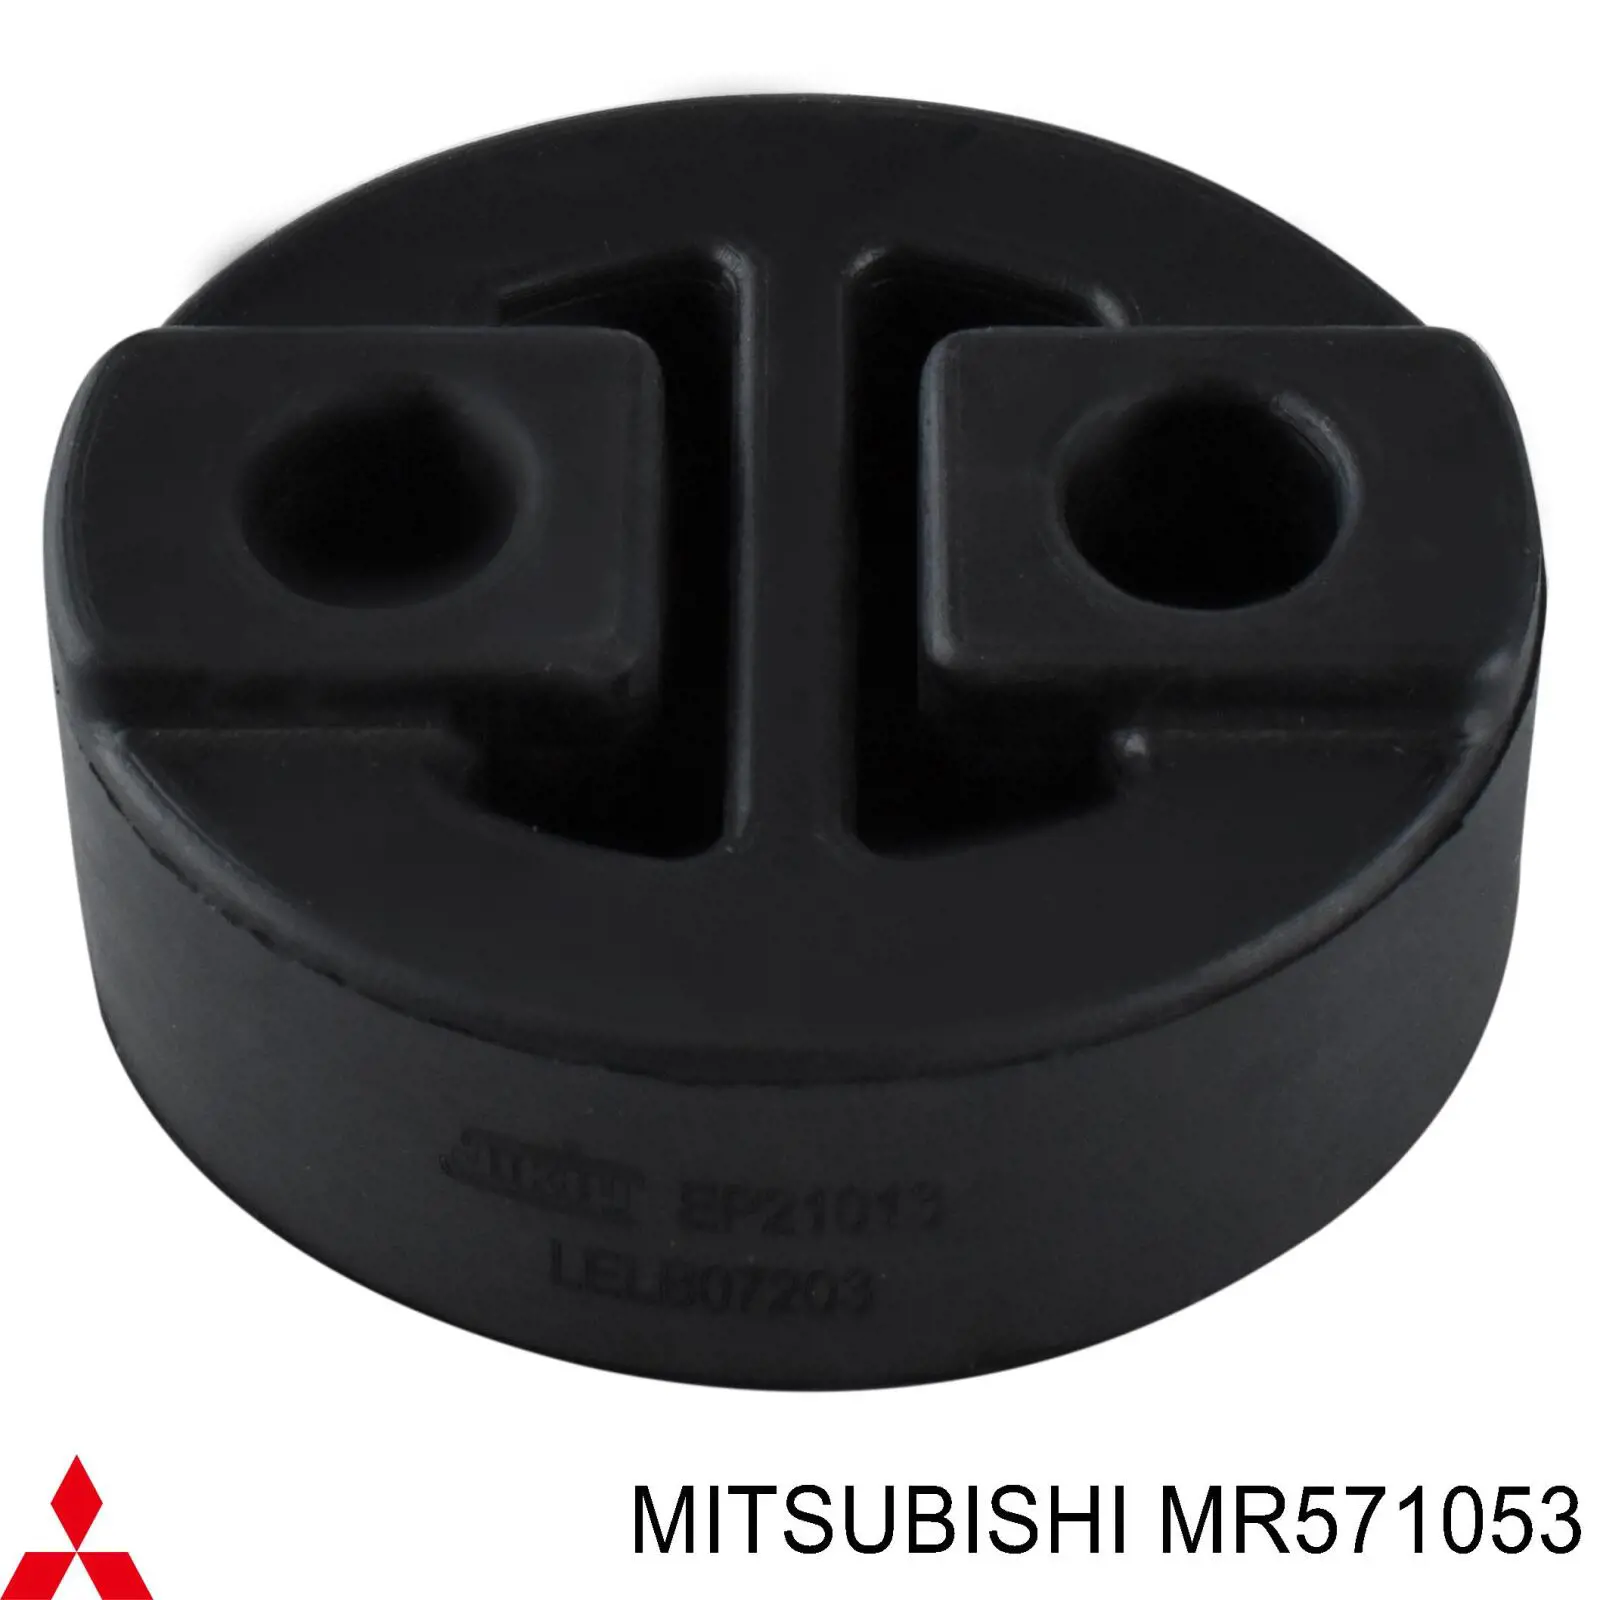 MR571053 Mitsubishi подушка крепления глушителя